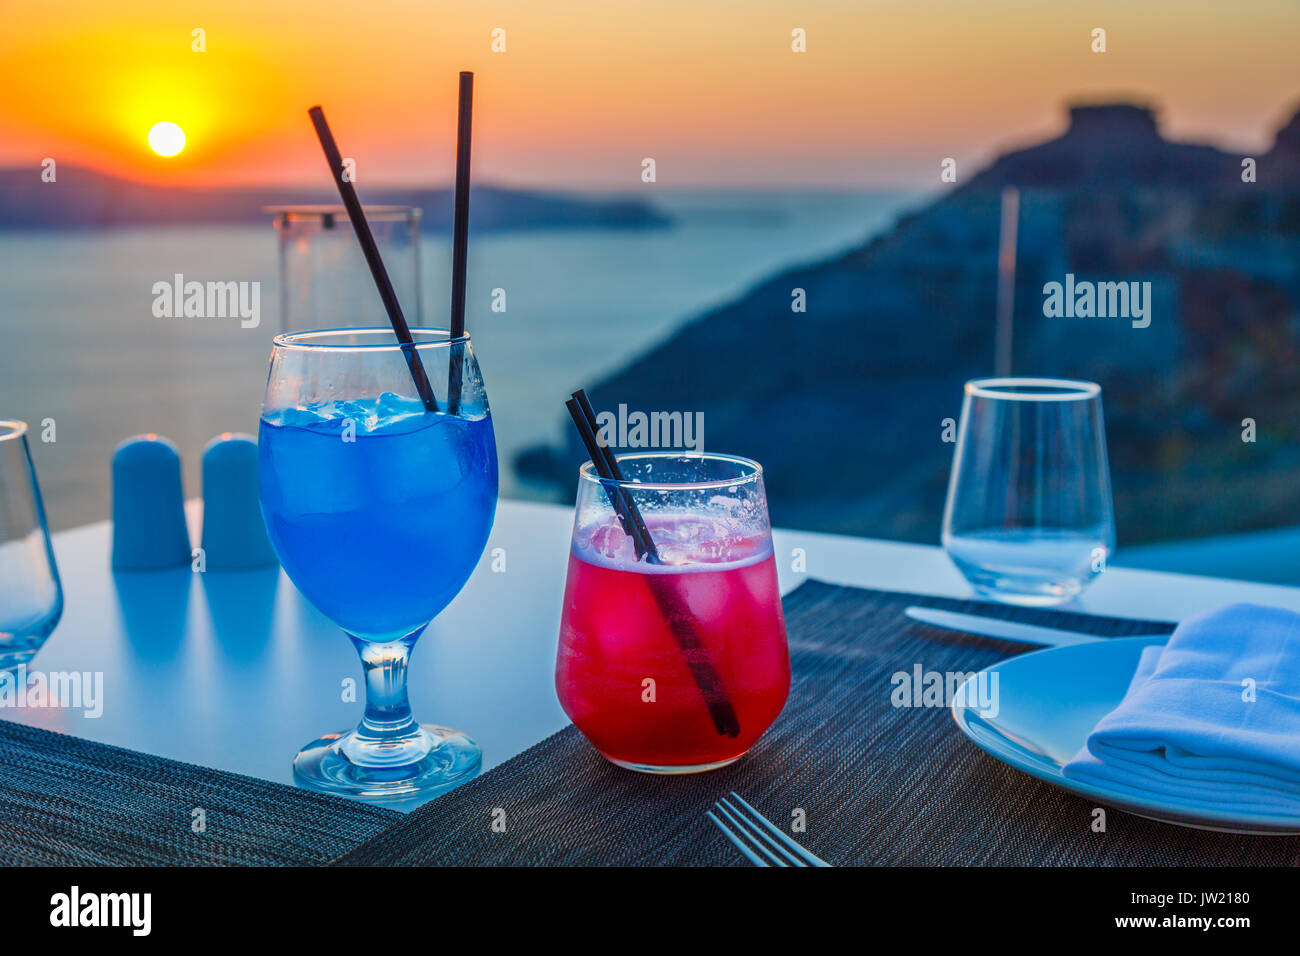 Des cocktails colorés, Imerovigli dans la soirée, un village près de Fira sur l'île grecque de Santorin appelée 'le balcon de la mer Égée" pour son coucher du soleil Banque D'Images